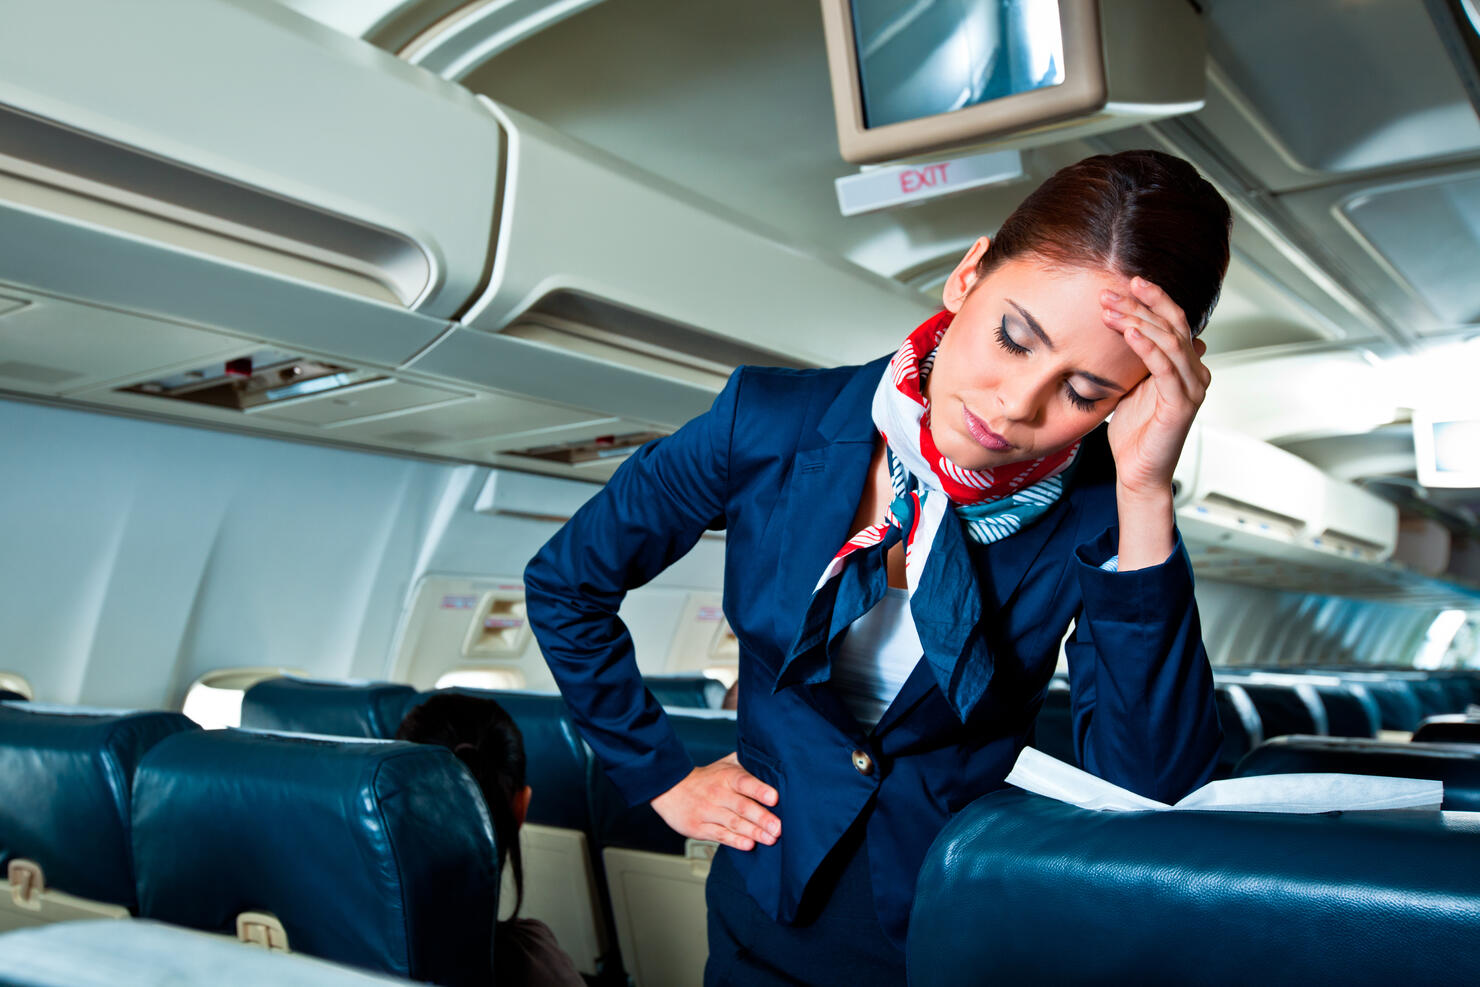 Tired air stewardess